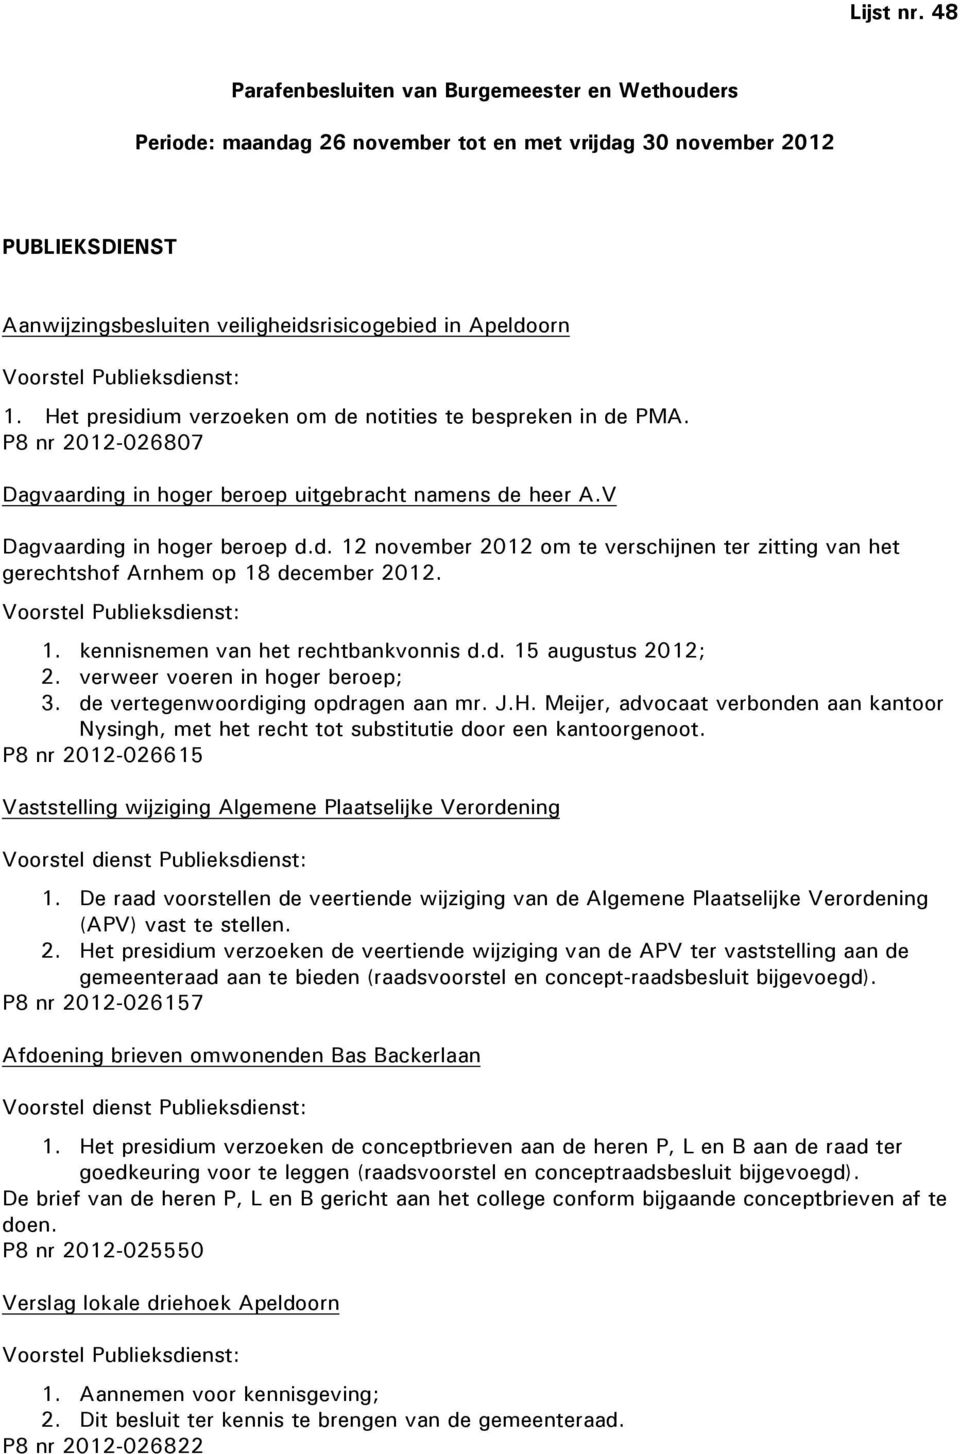 Publieksdienst: 1. Het presidium verzoeken om de notities te bespreken in de PMA. P8 nr 2012-026807 Dagvaarding in hoger beroep uitgebracht namens de heer A.V Dagvaarding in hoger beroep d.d. 12 november 2012 om te verschijnen ter zitting van het gerechtshof Arnhem op 18 december 2012.